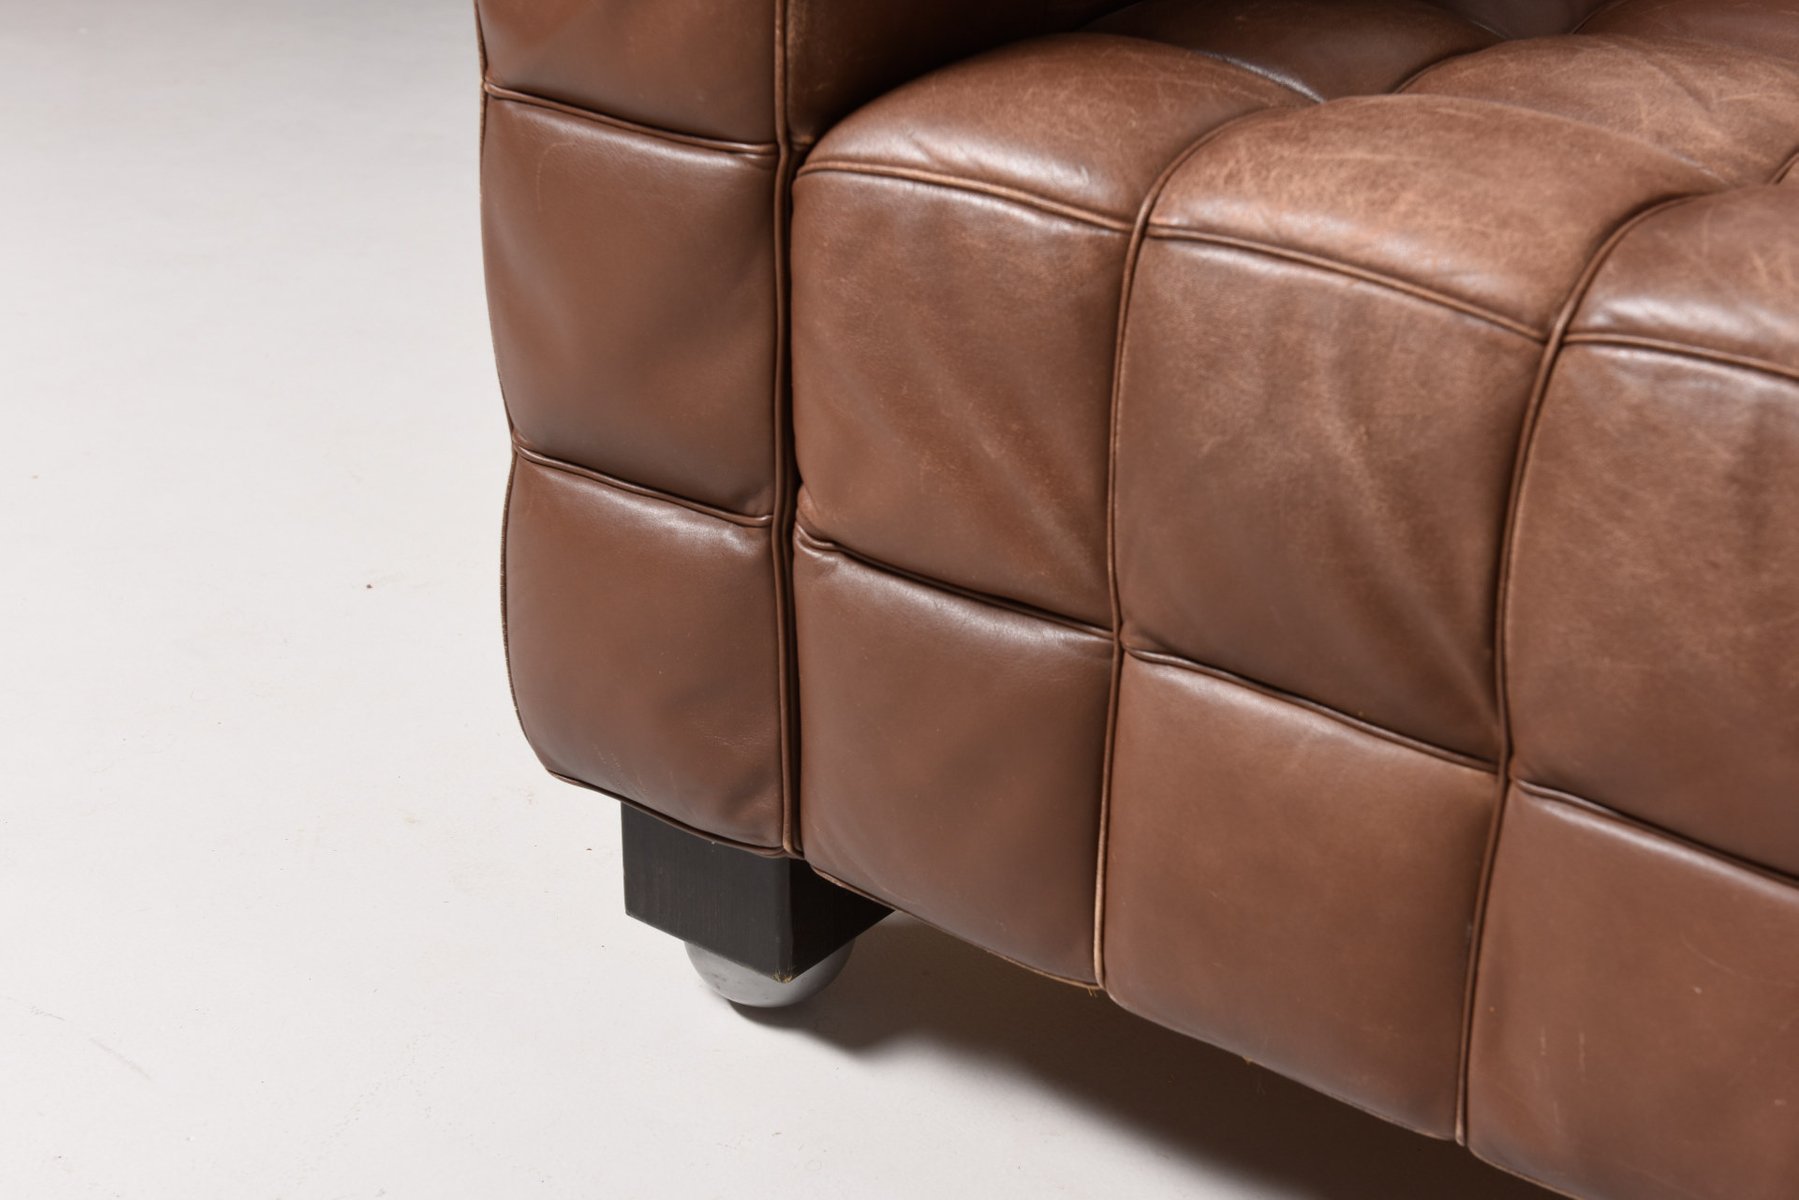 Caramel Leather Sofa Attica 3 Seat Leather Sofa 1 Image